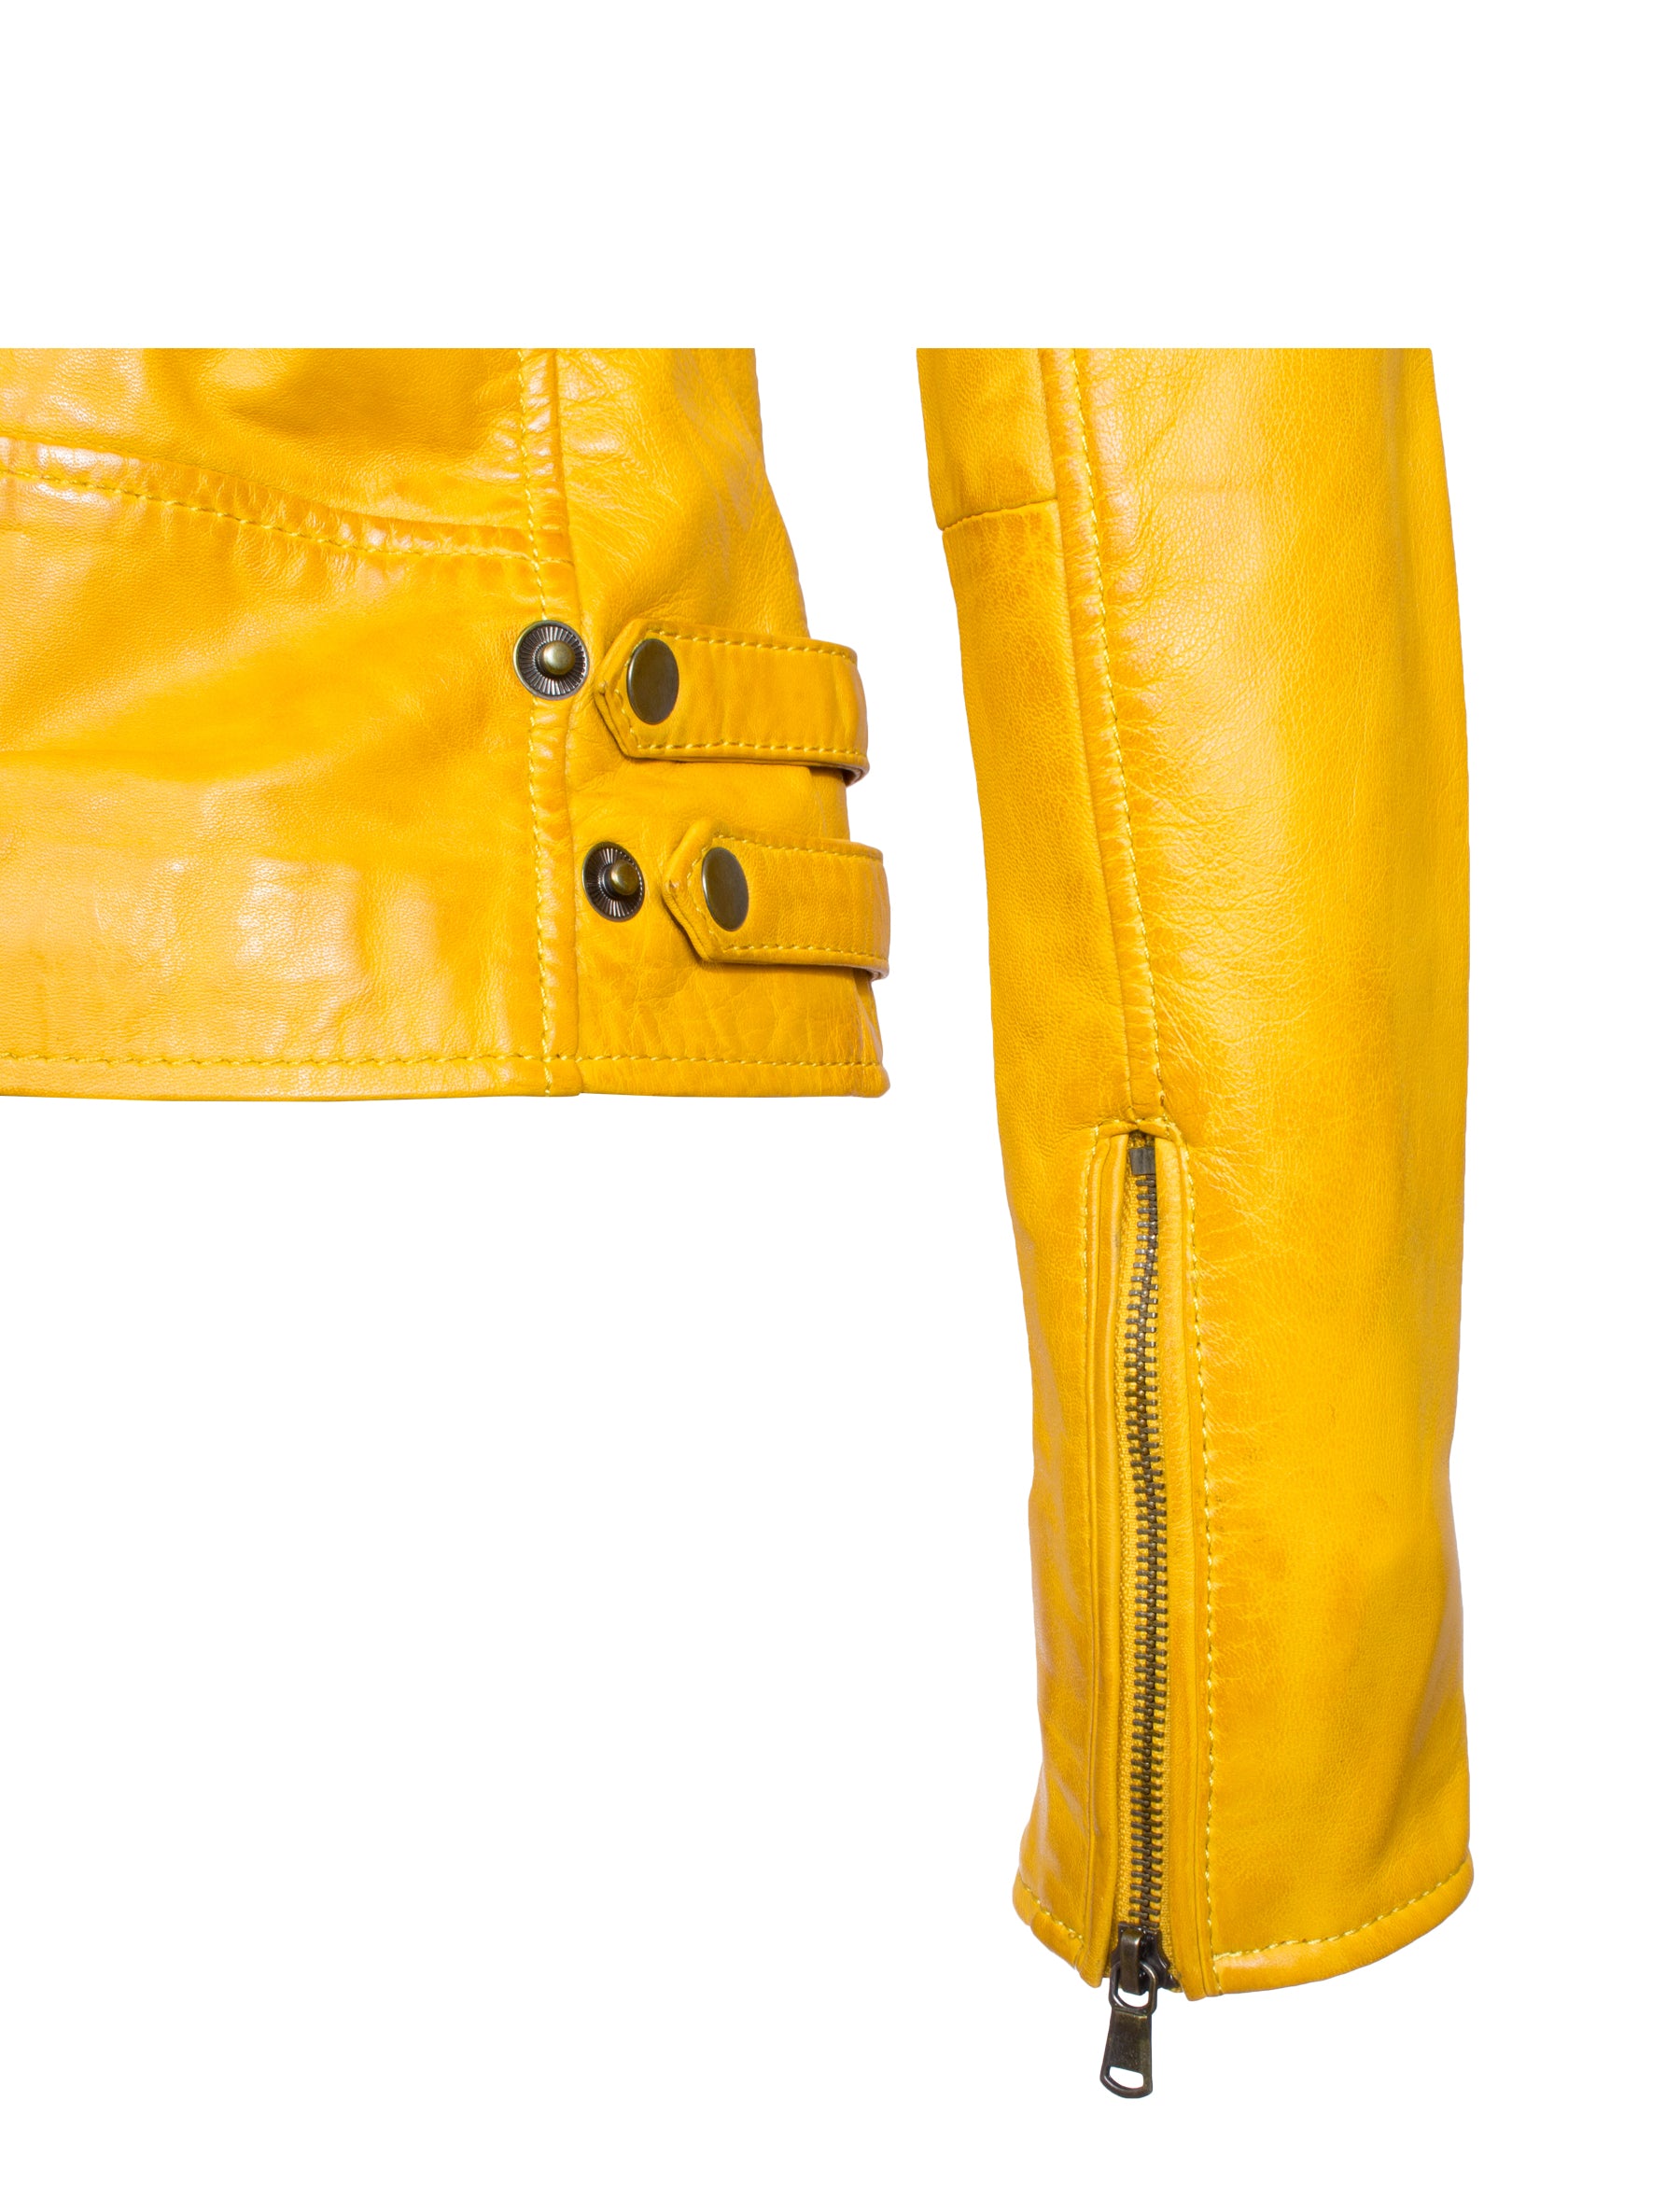 Damen Lederjacke im Bikerstil aus Lammleder - 1123 in gelb